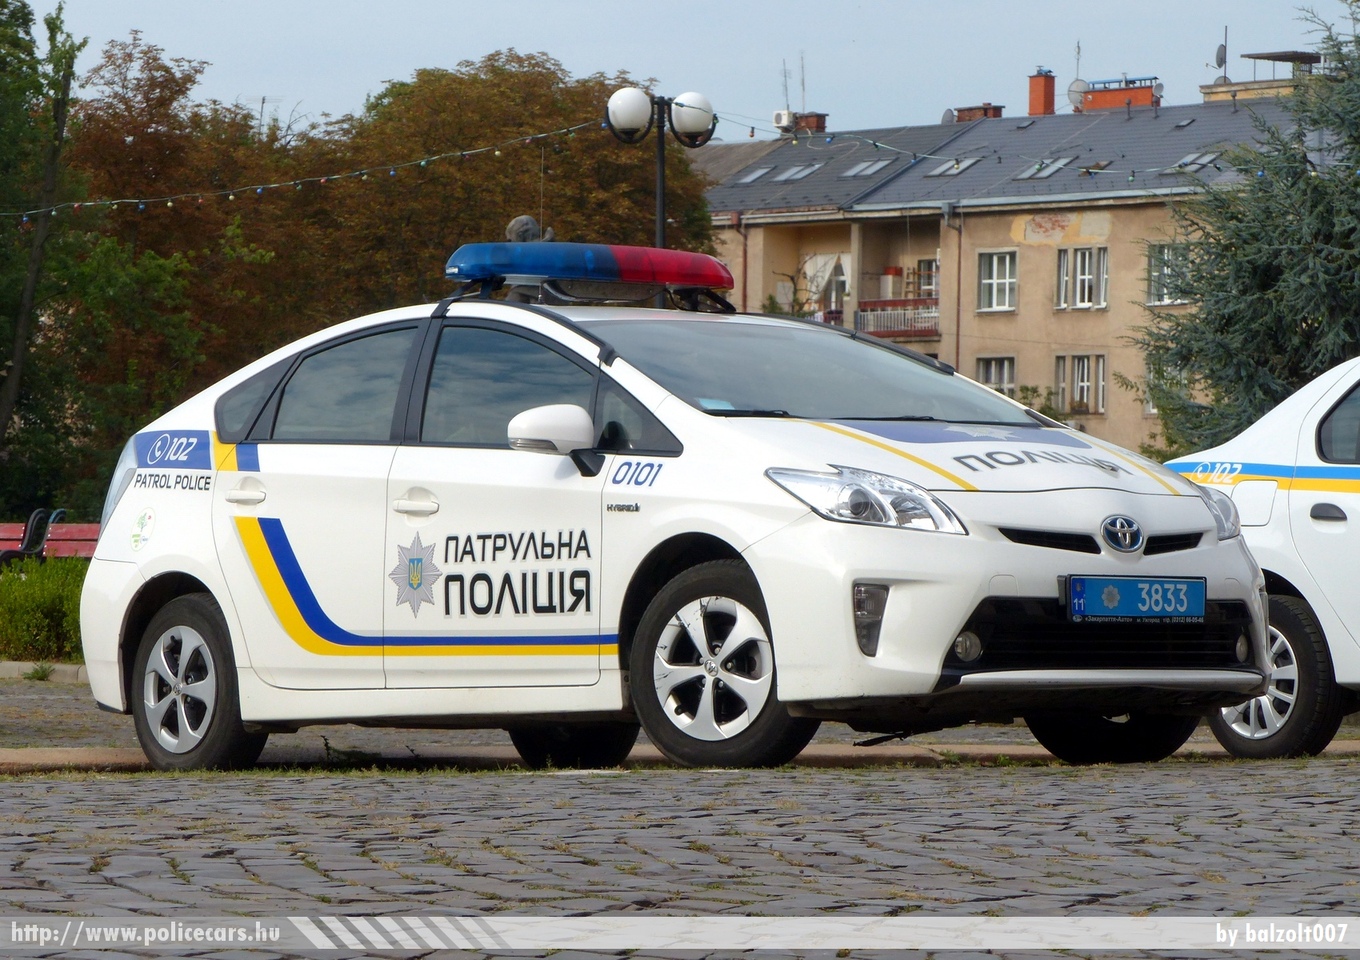 Toyota Prius, fotó: balzolt007
Keywords: ukrán Ukrajna rendőr rendőrautó rendőrség Ukraine ukrainian police policecar